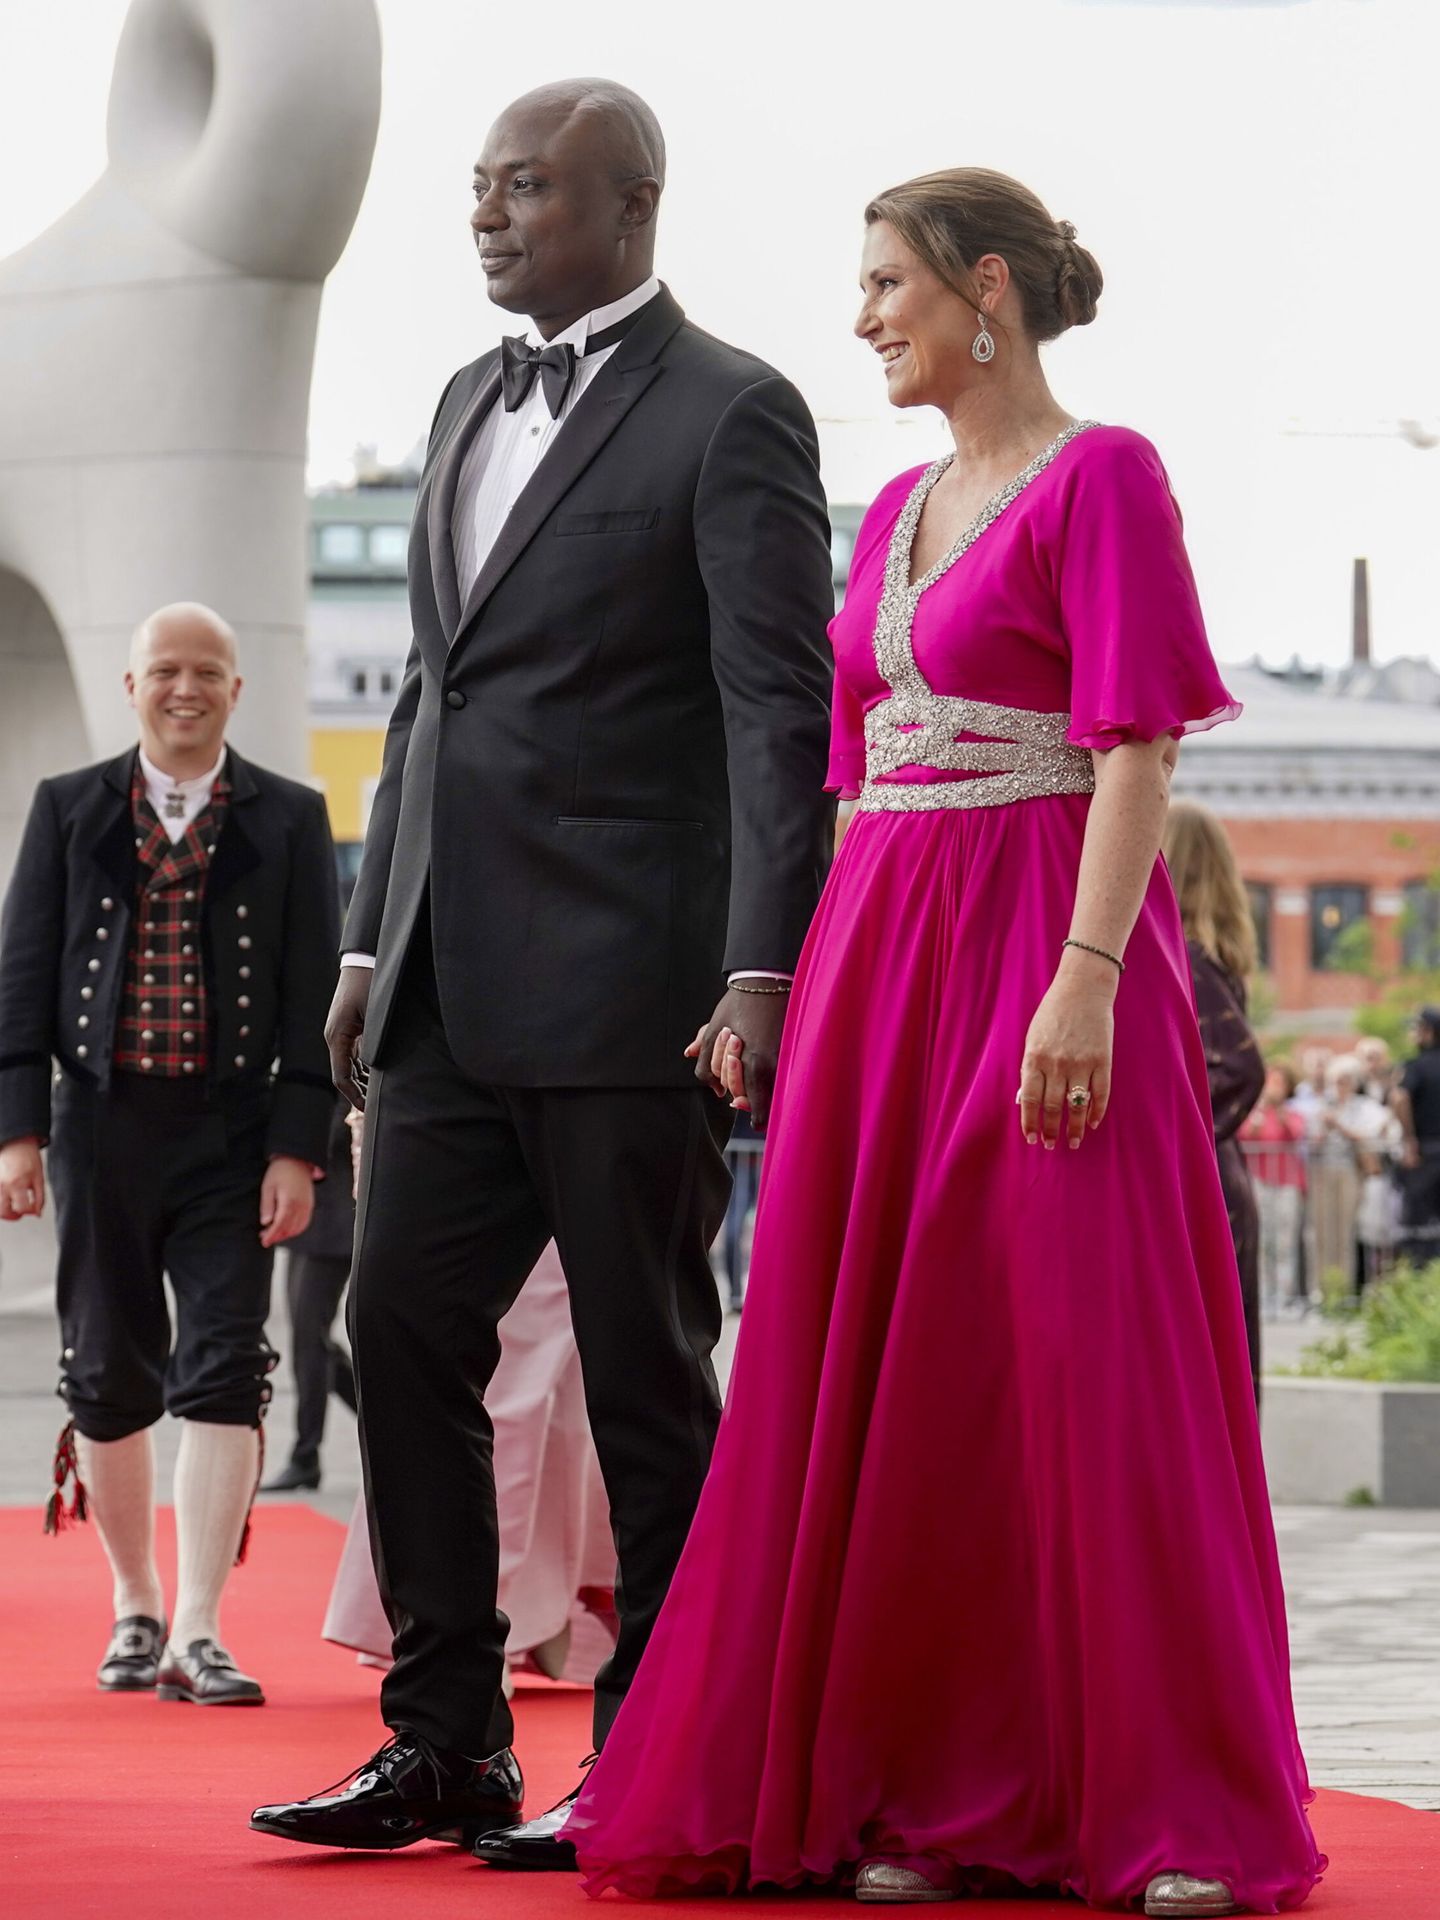 Marta Luisa de Noruega y su prometido, Durek Verret, a su llegada a la cena del Parlamento en Oslo. (EFE/Mosvold)